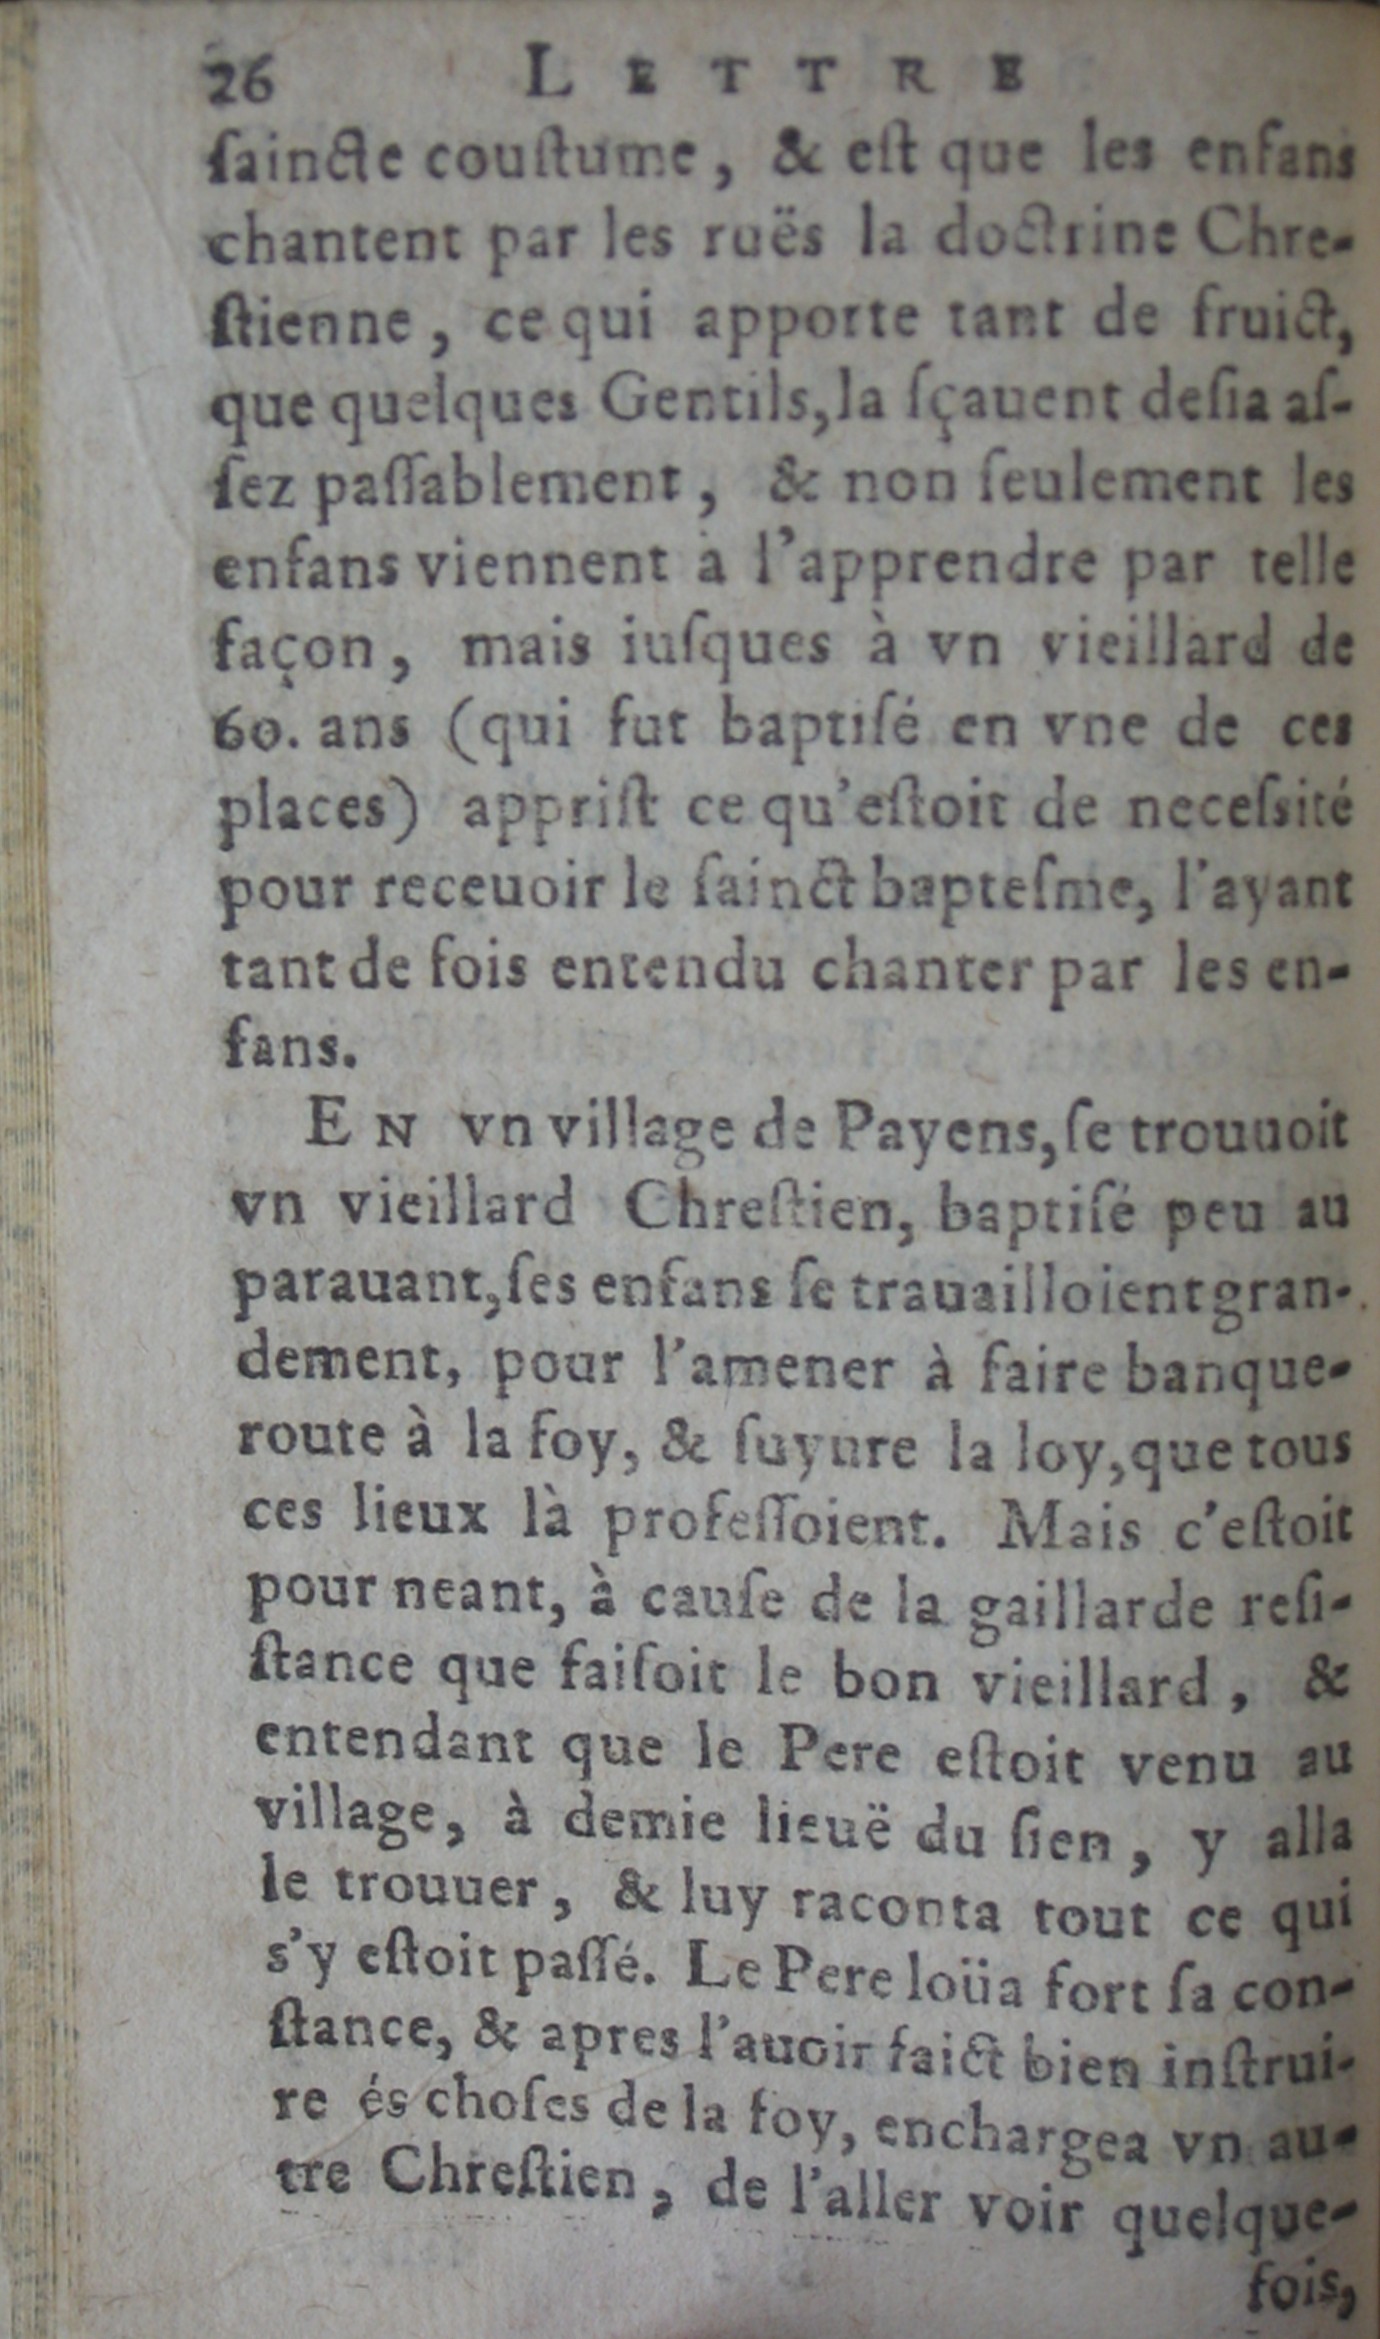 p. 28 (26)